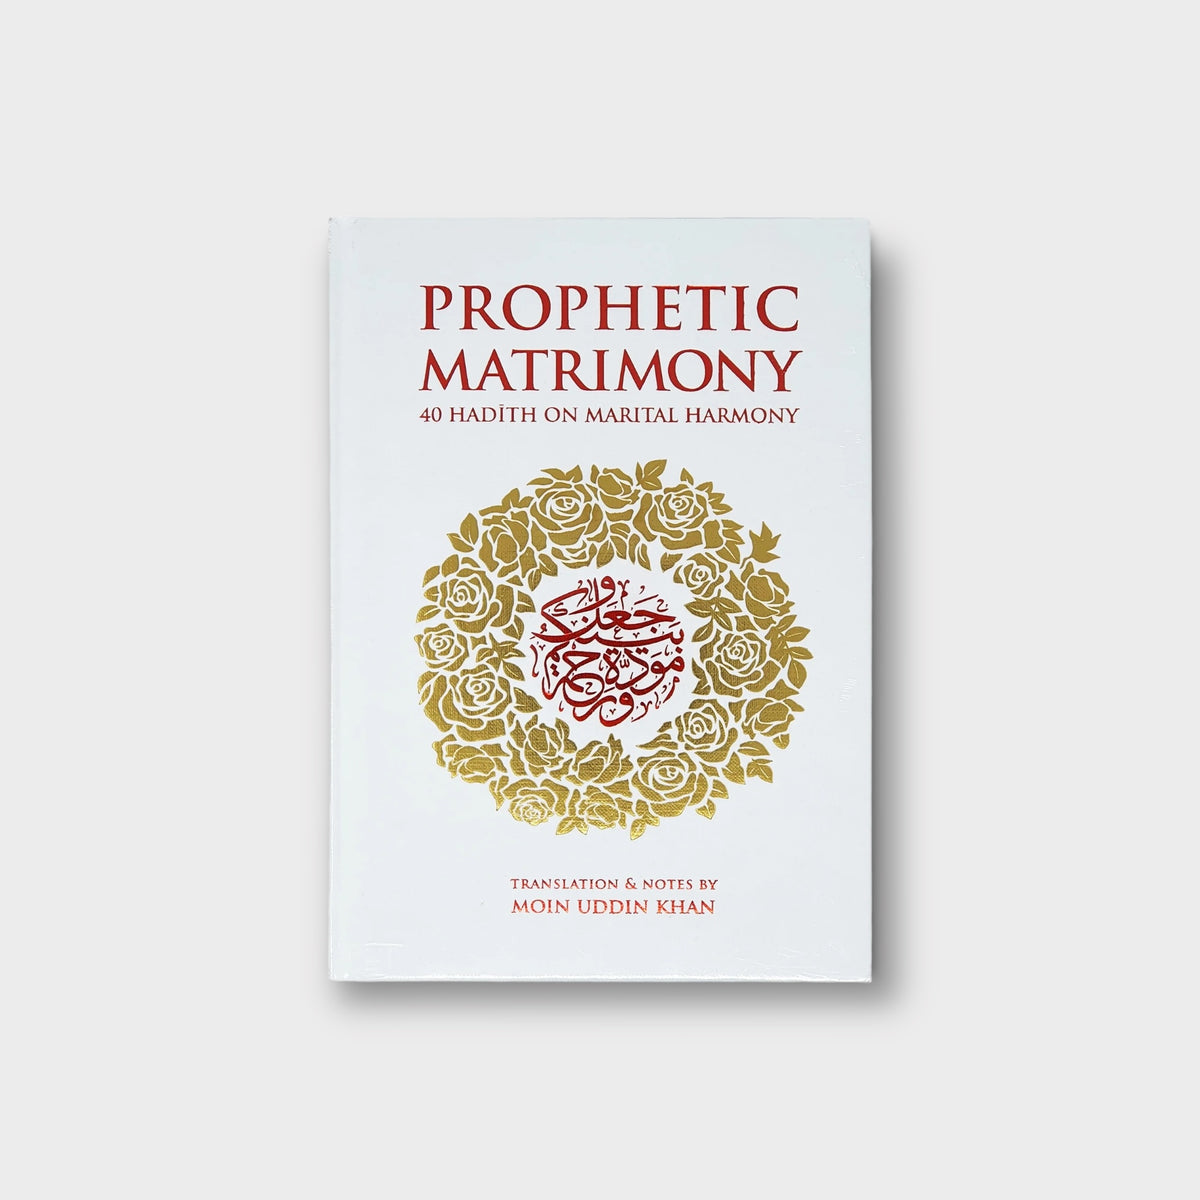 Prophetic Matrimony: 40 Hadith on Marital Harmony